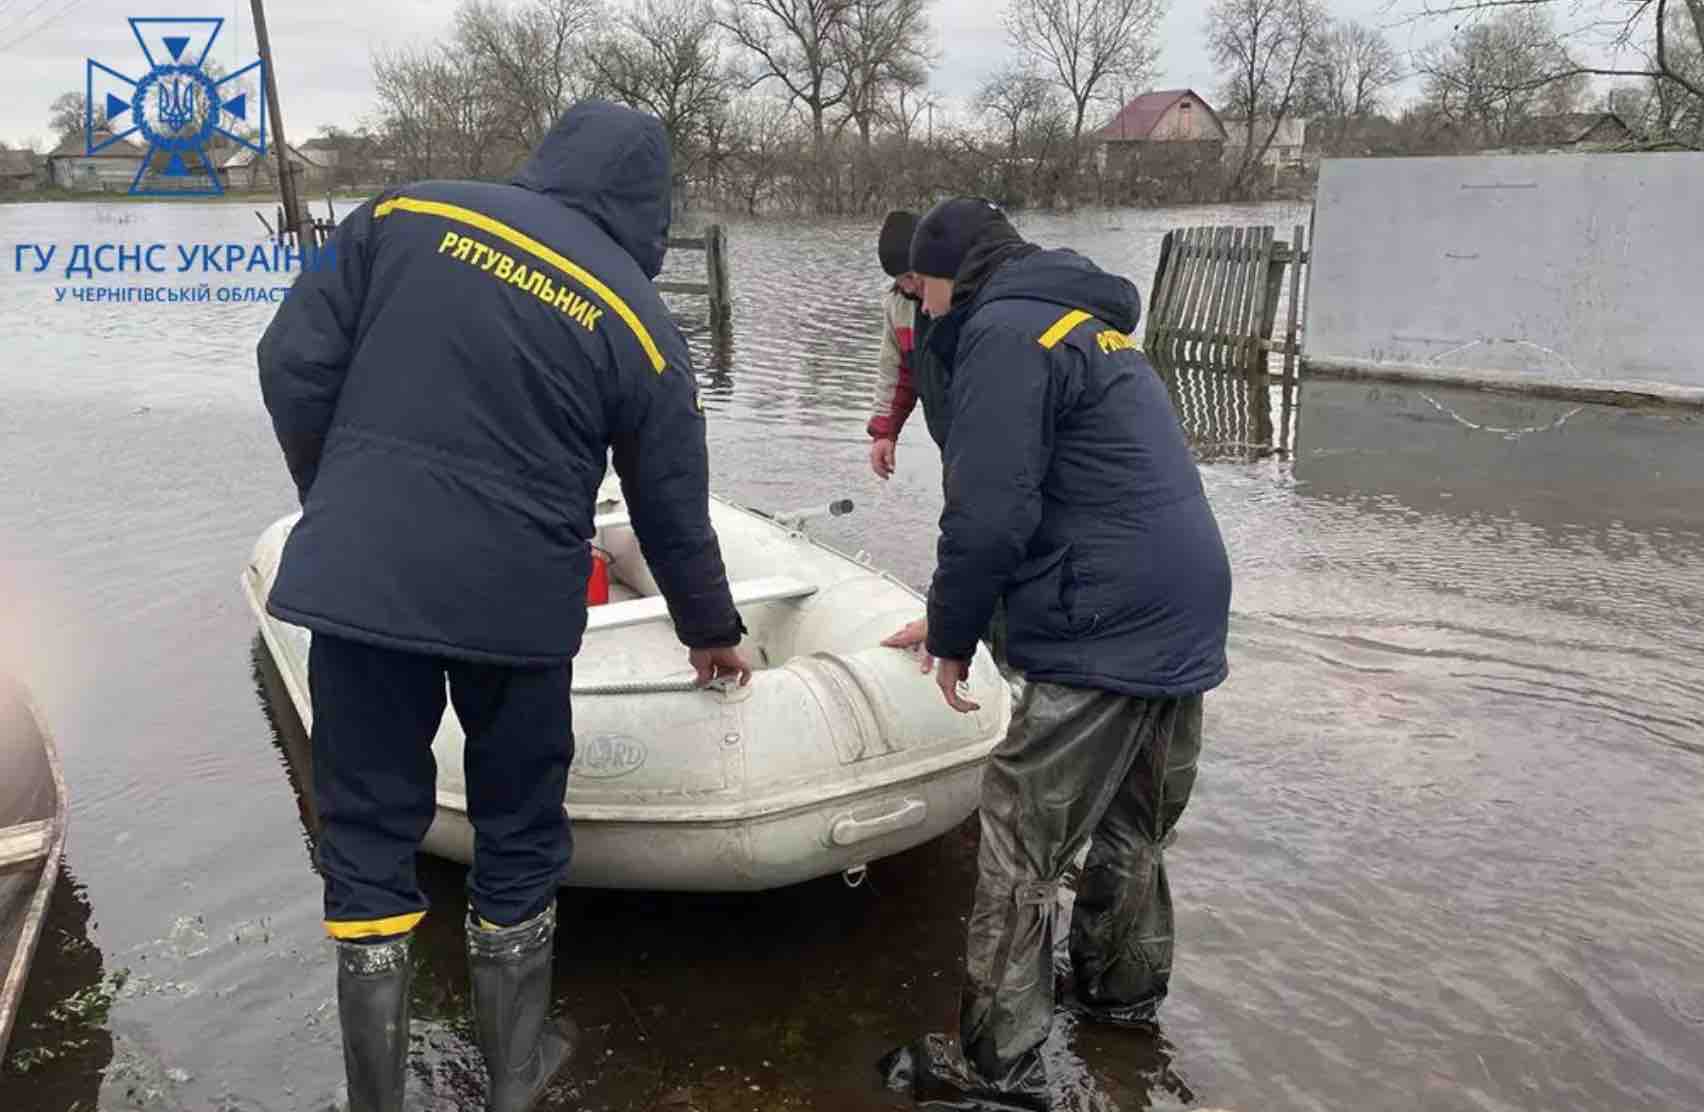 В зону подтопления попали 6 областей, самая плохая ситуация в Черниговской: фото, видео